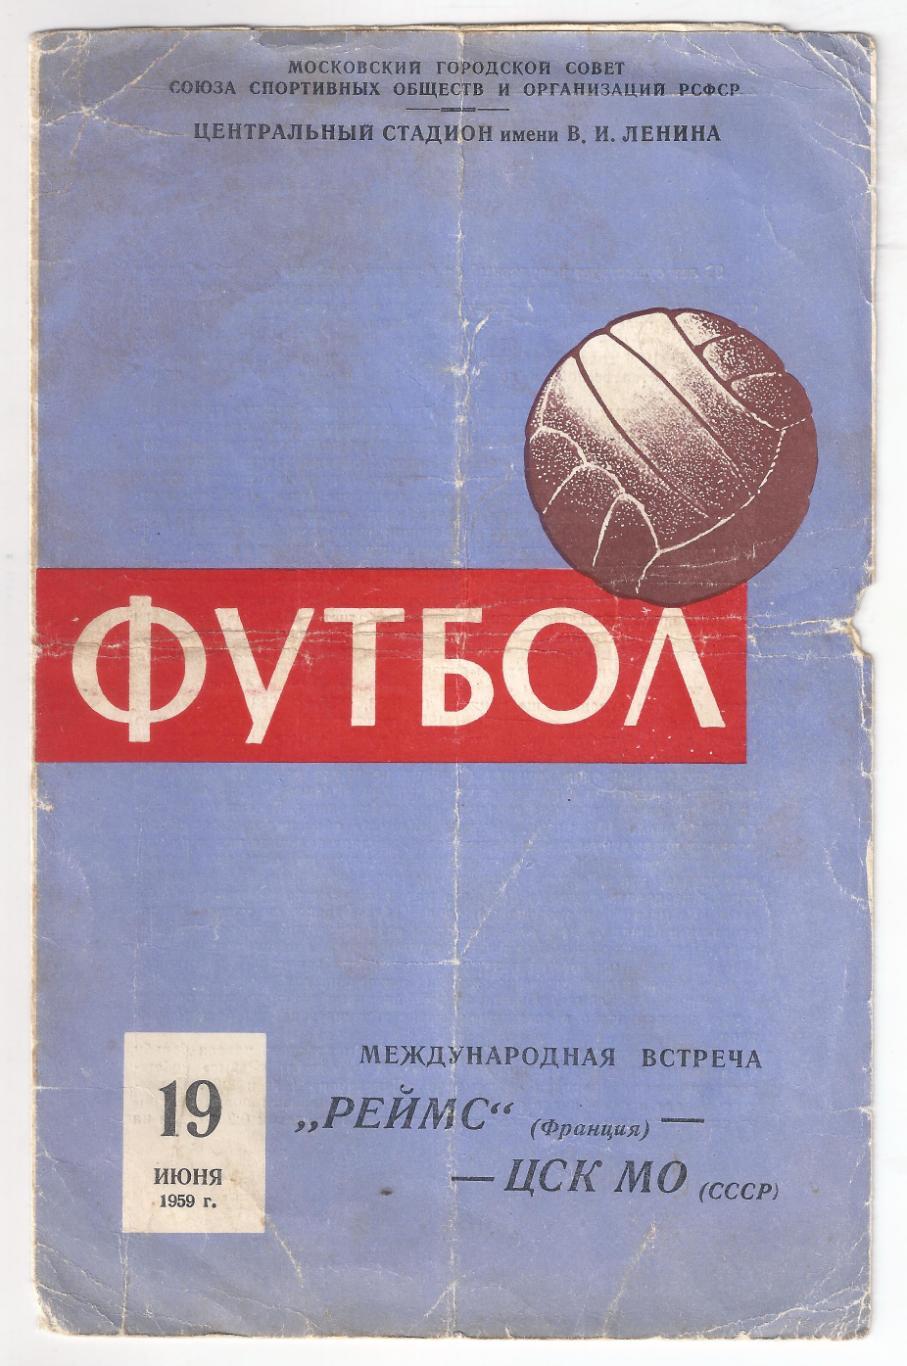 1959 - ЦСК МО Москва - Реймс Франция